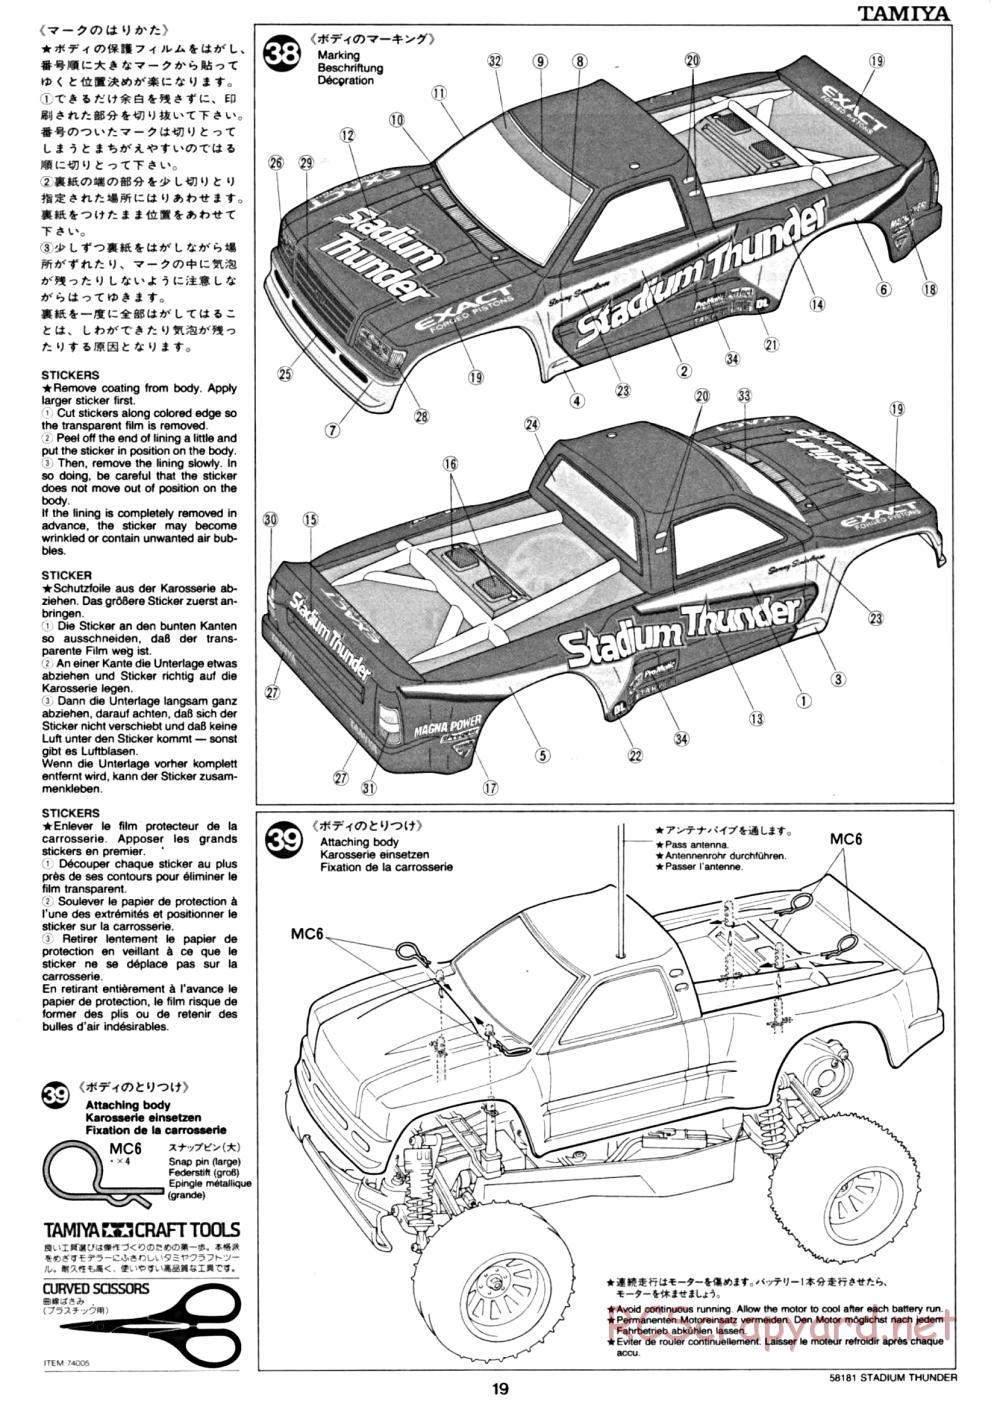 Tamiya - Stadium Thunder Chassis - Manual - Page 19